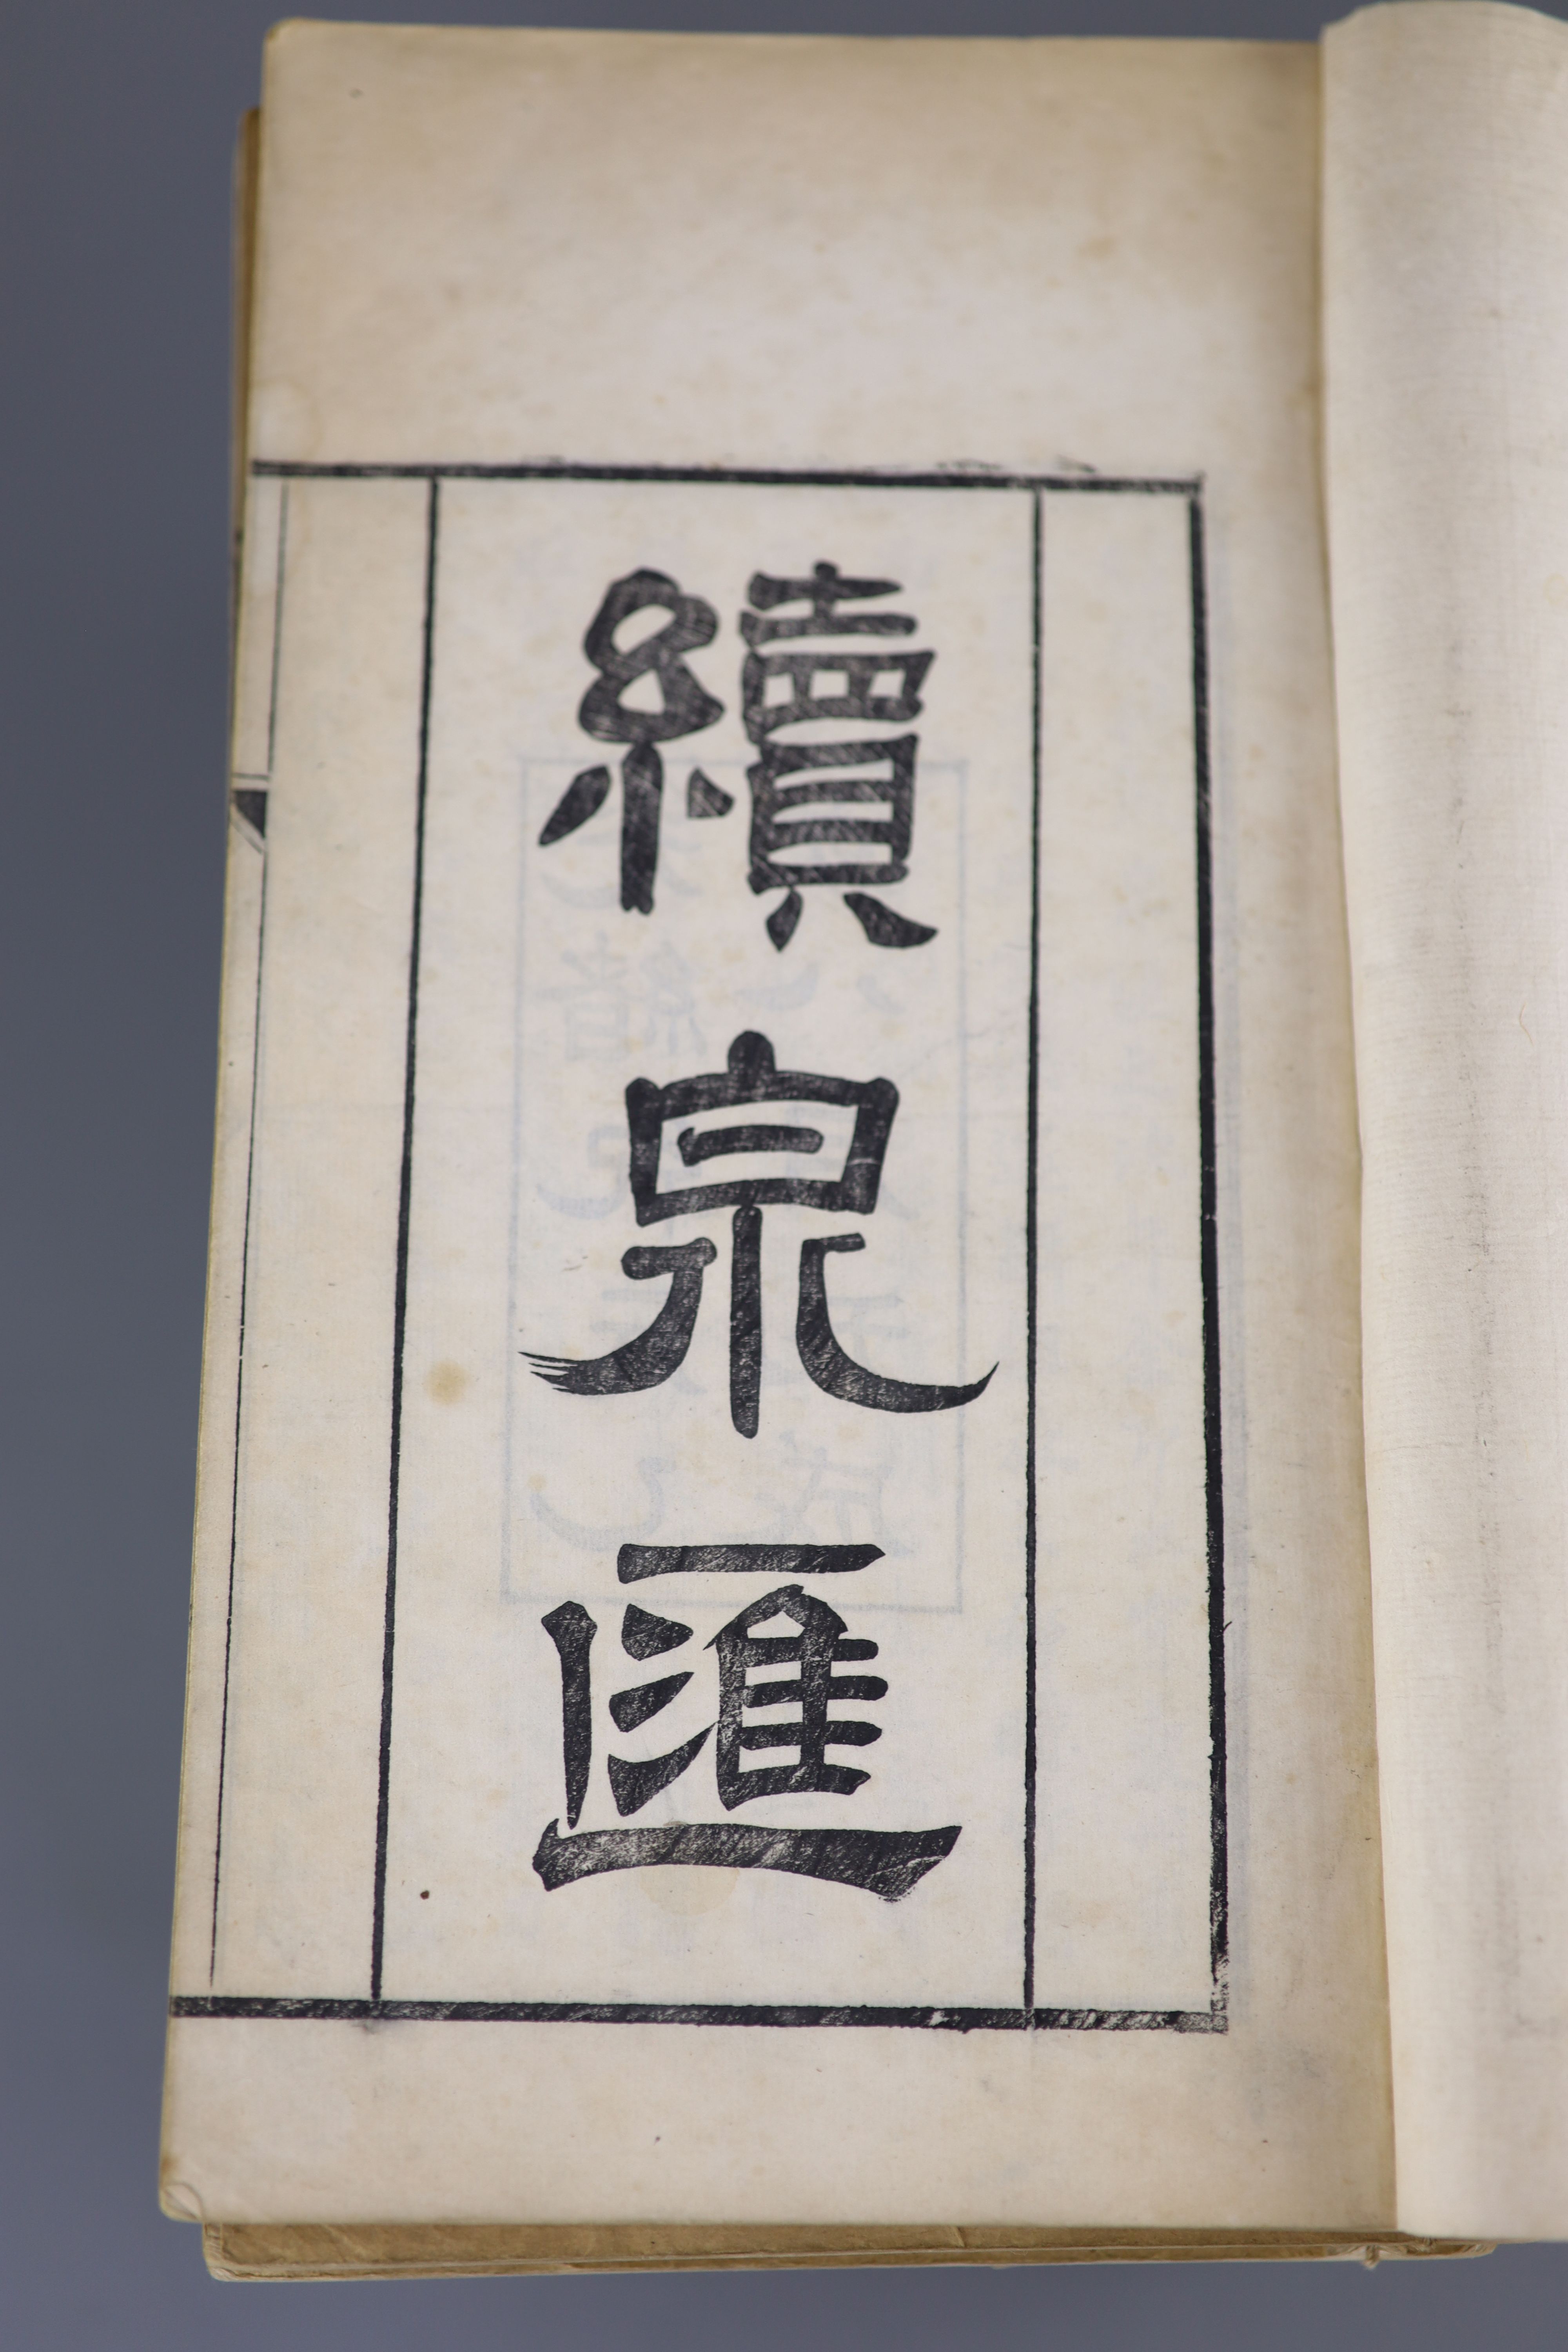 Li Zhuoxian, 'Gu quan hui' (Collecting old coins), published in Beijing, Tongzhi jia zi, 1864, 16 volumes and Li Zhuoxian, 'Xua quan hui' (Collecting coins continued) published in Beijing, Guangxu ji yuan yi hai, 1875, f